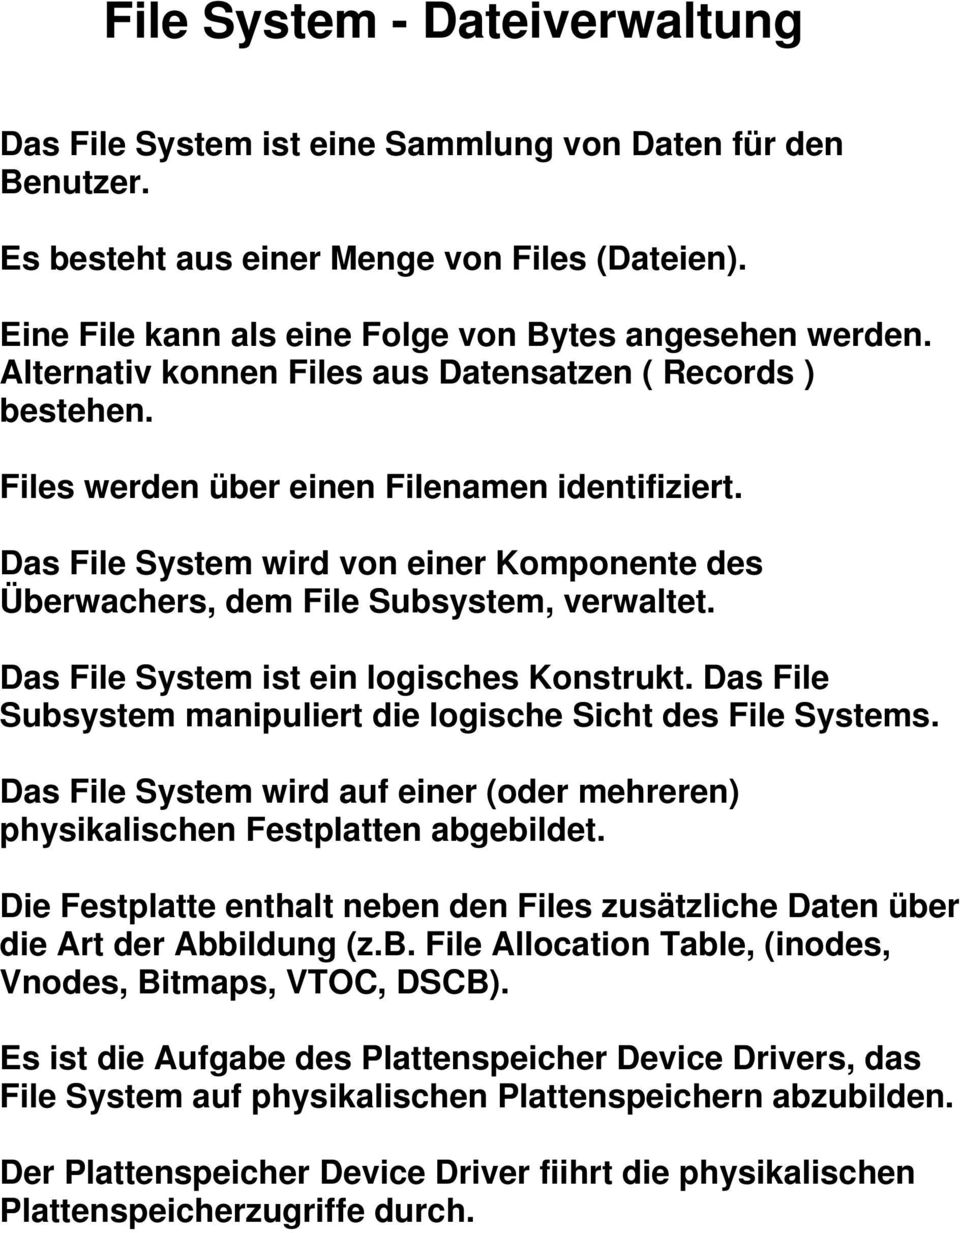 Das File System ist ein logisches Konstrukt. Das File Subsystem manipuliert die logische Sicht des File Systems. Das File System wird auf einer (oder mehreren) physikalischen Festplatten abgebildet.